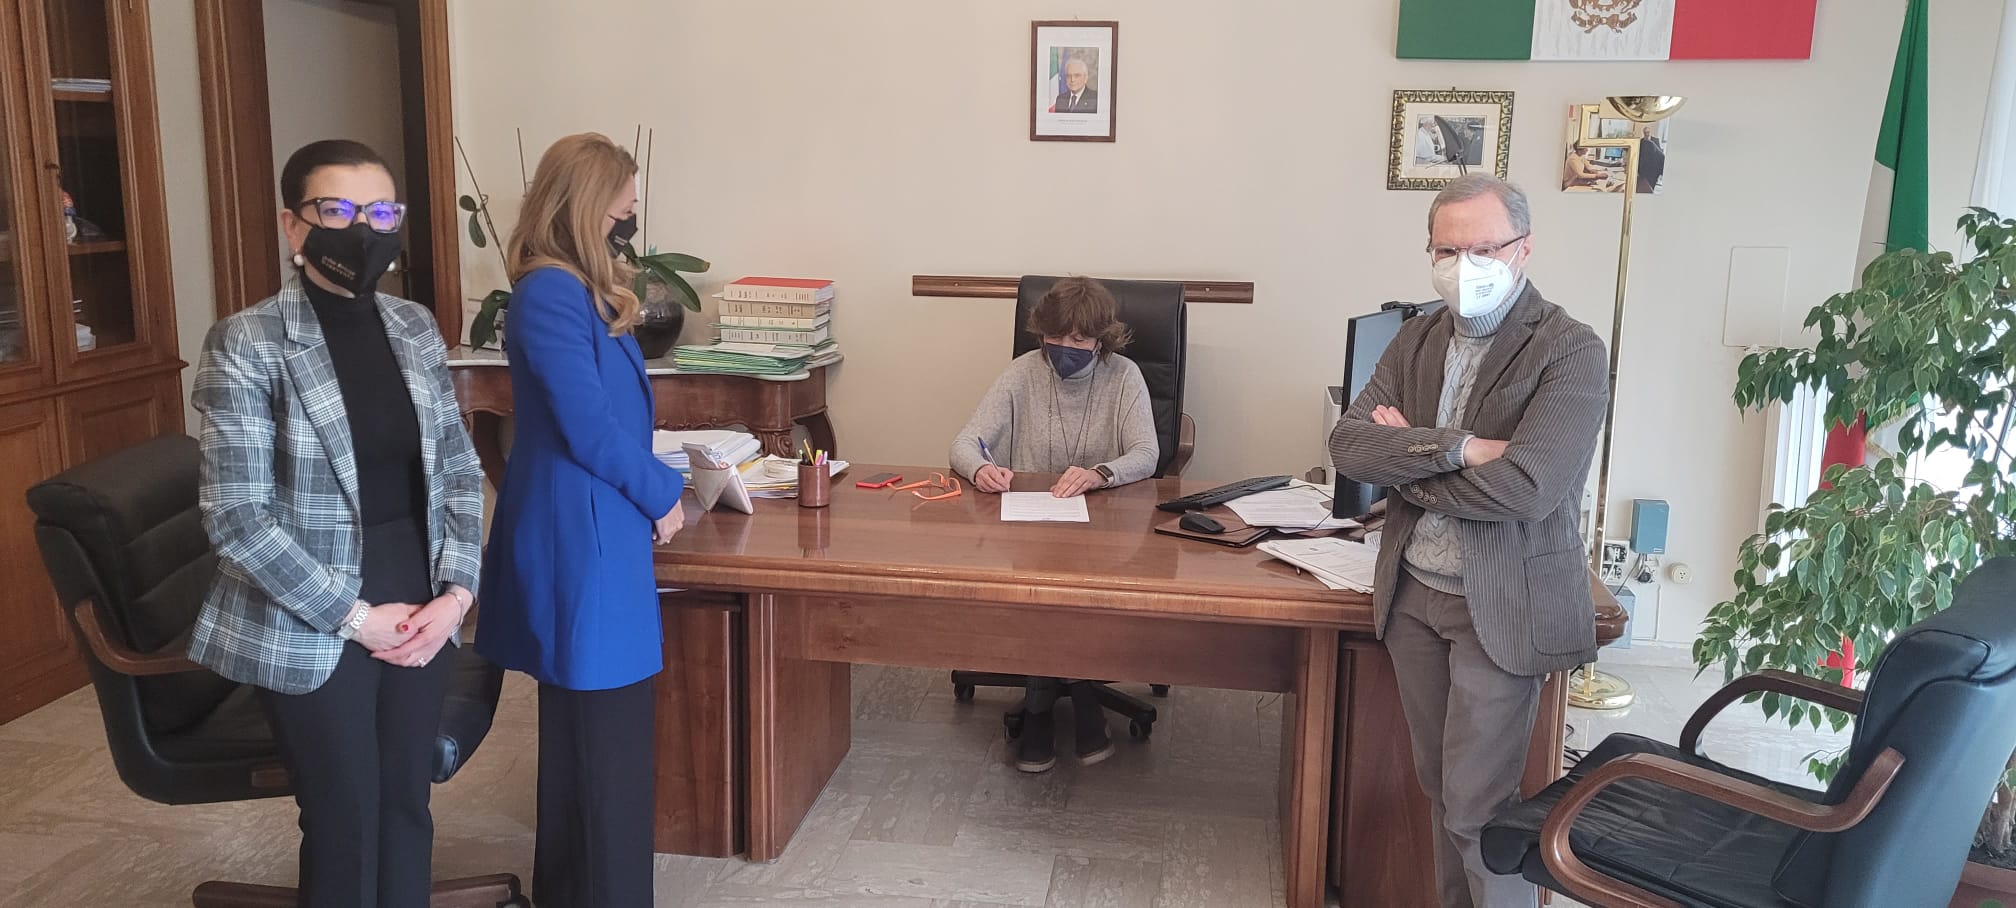 Benevento|Ordine avvocati insieme con il Tribunale per protocollo trasferimenti immobiliari in materia di separazione e divorzio coniugi